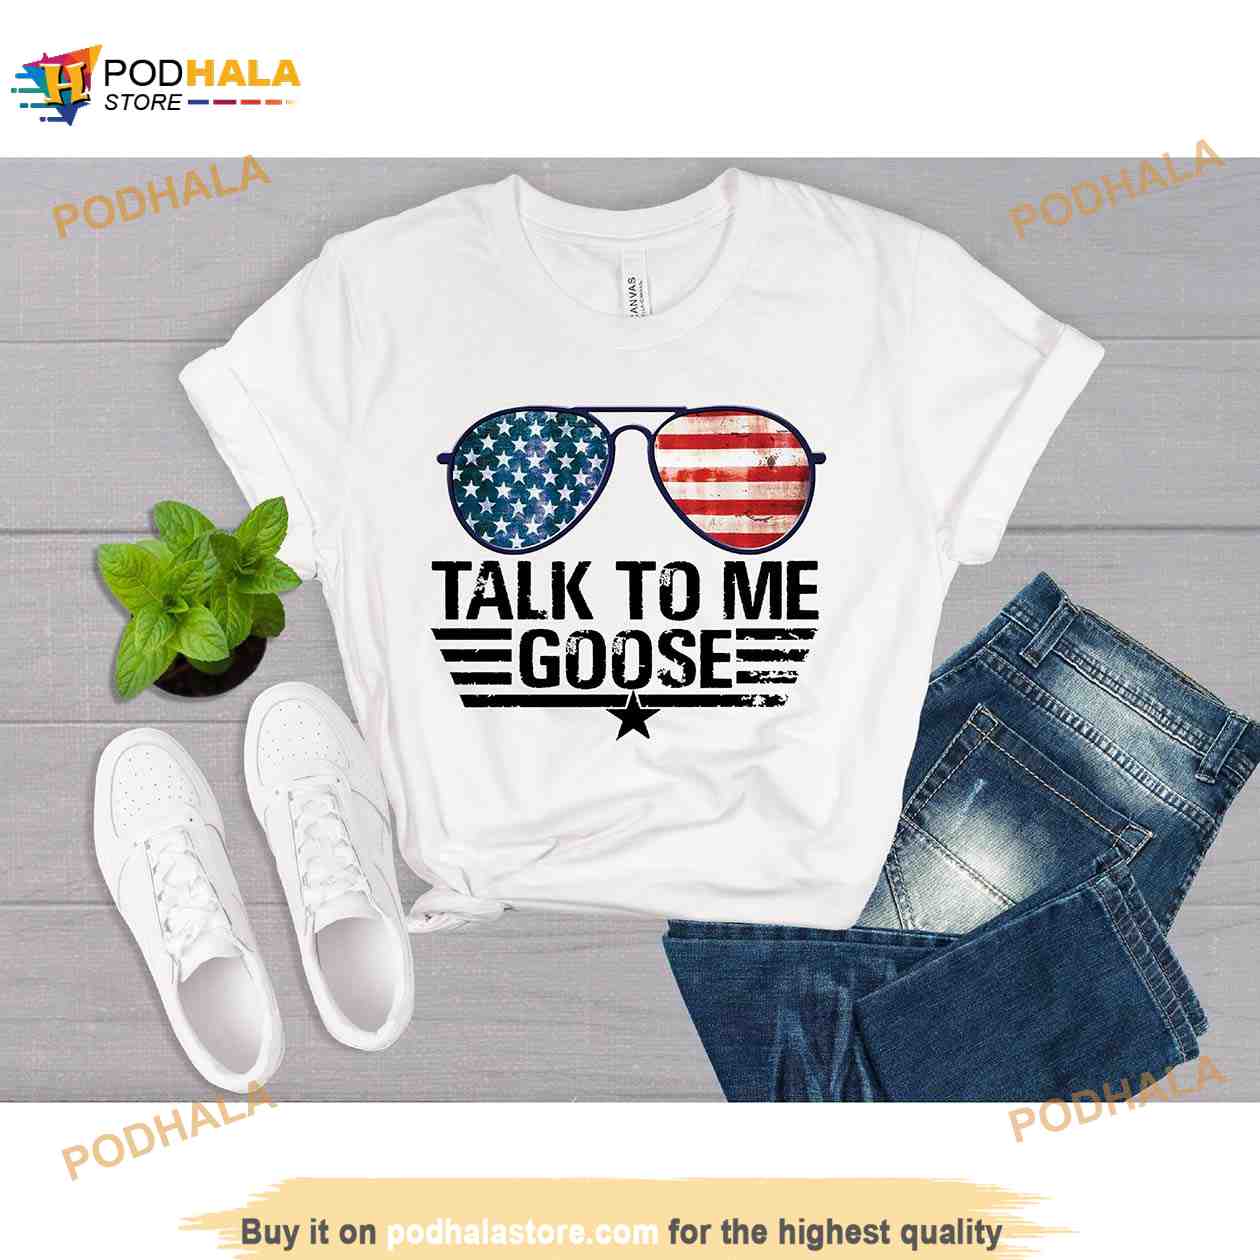 Talk To Me Goose Shirt, Funny Goose Shirt, Top Gun Shirt, Top Gun